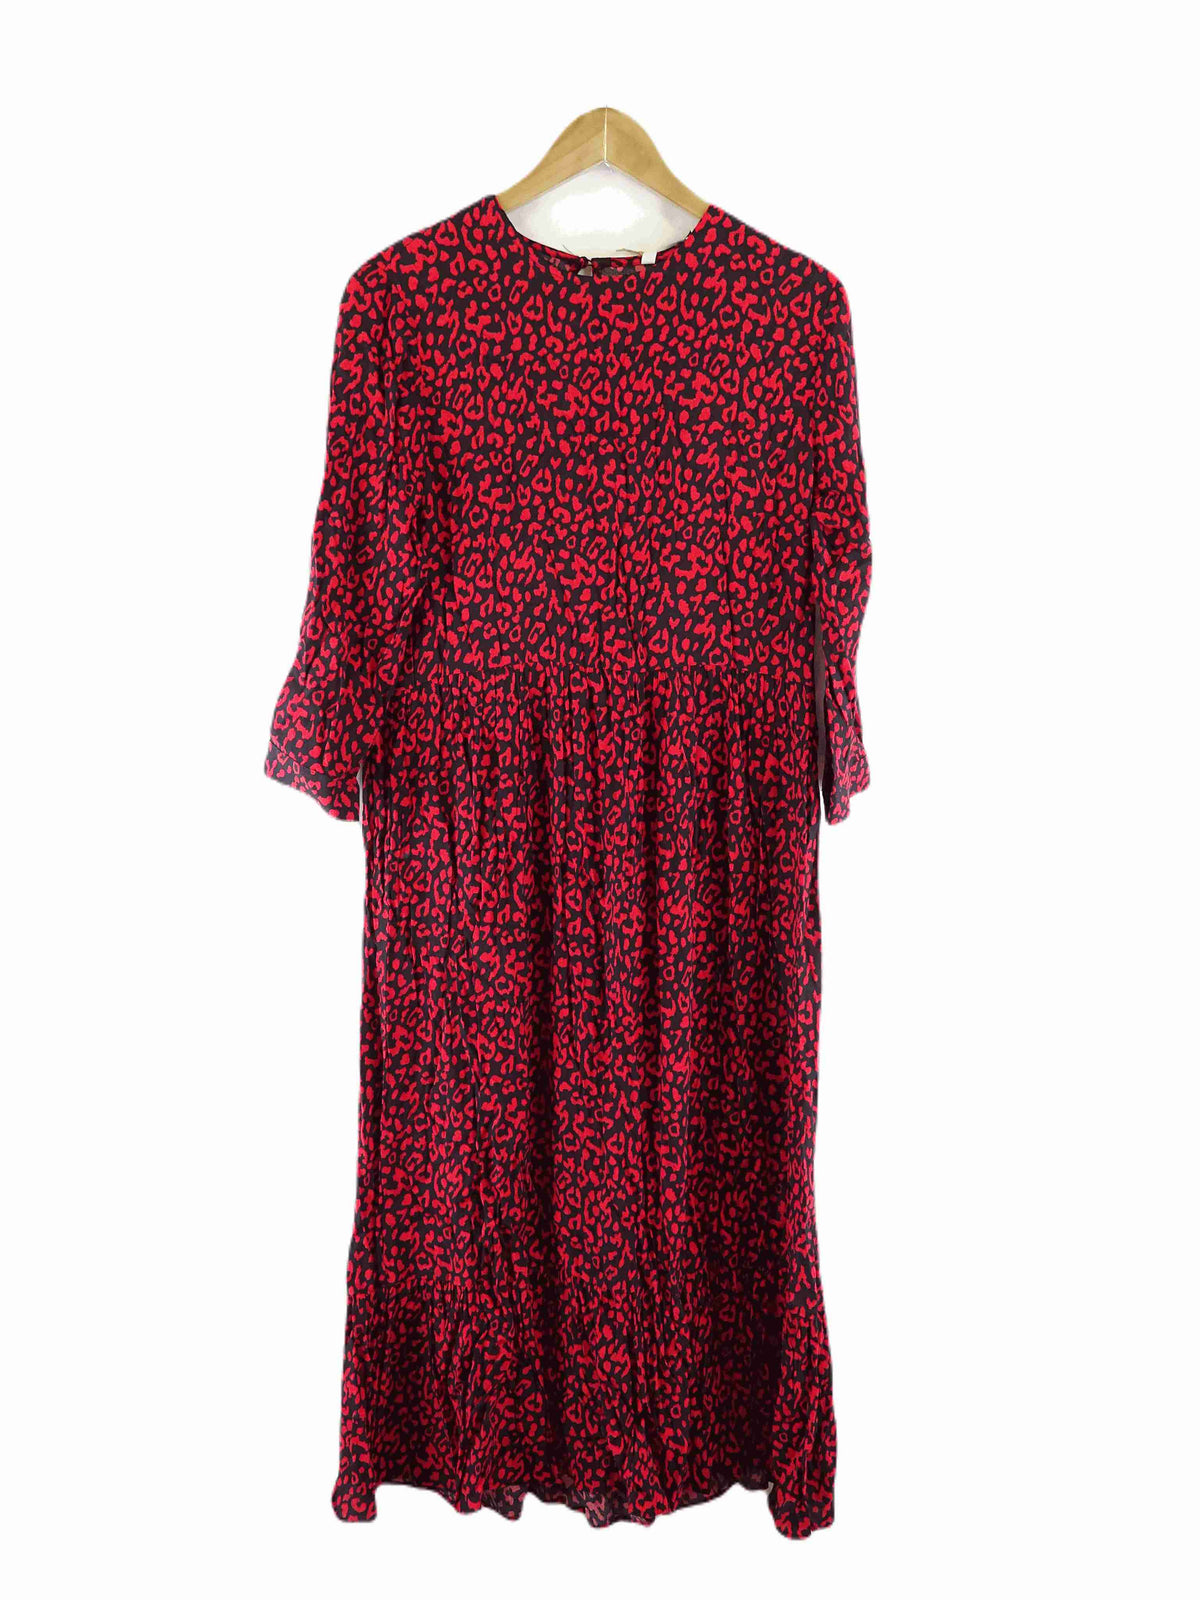 Zara Black and Red Leopard Print Maxi Dress M